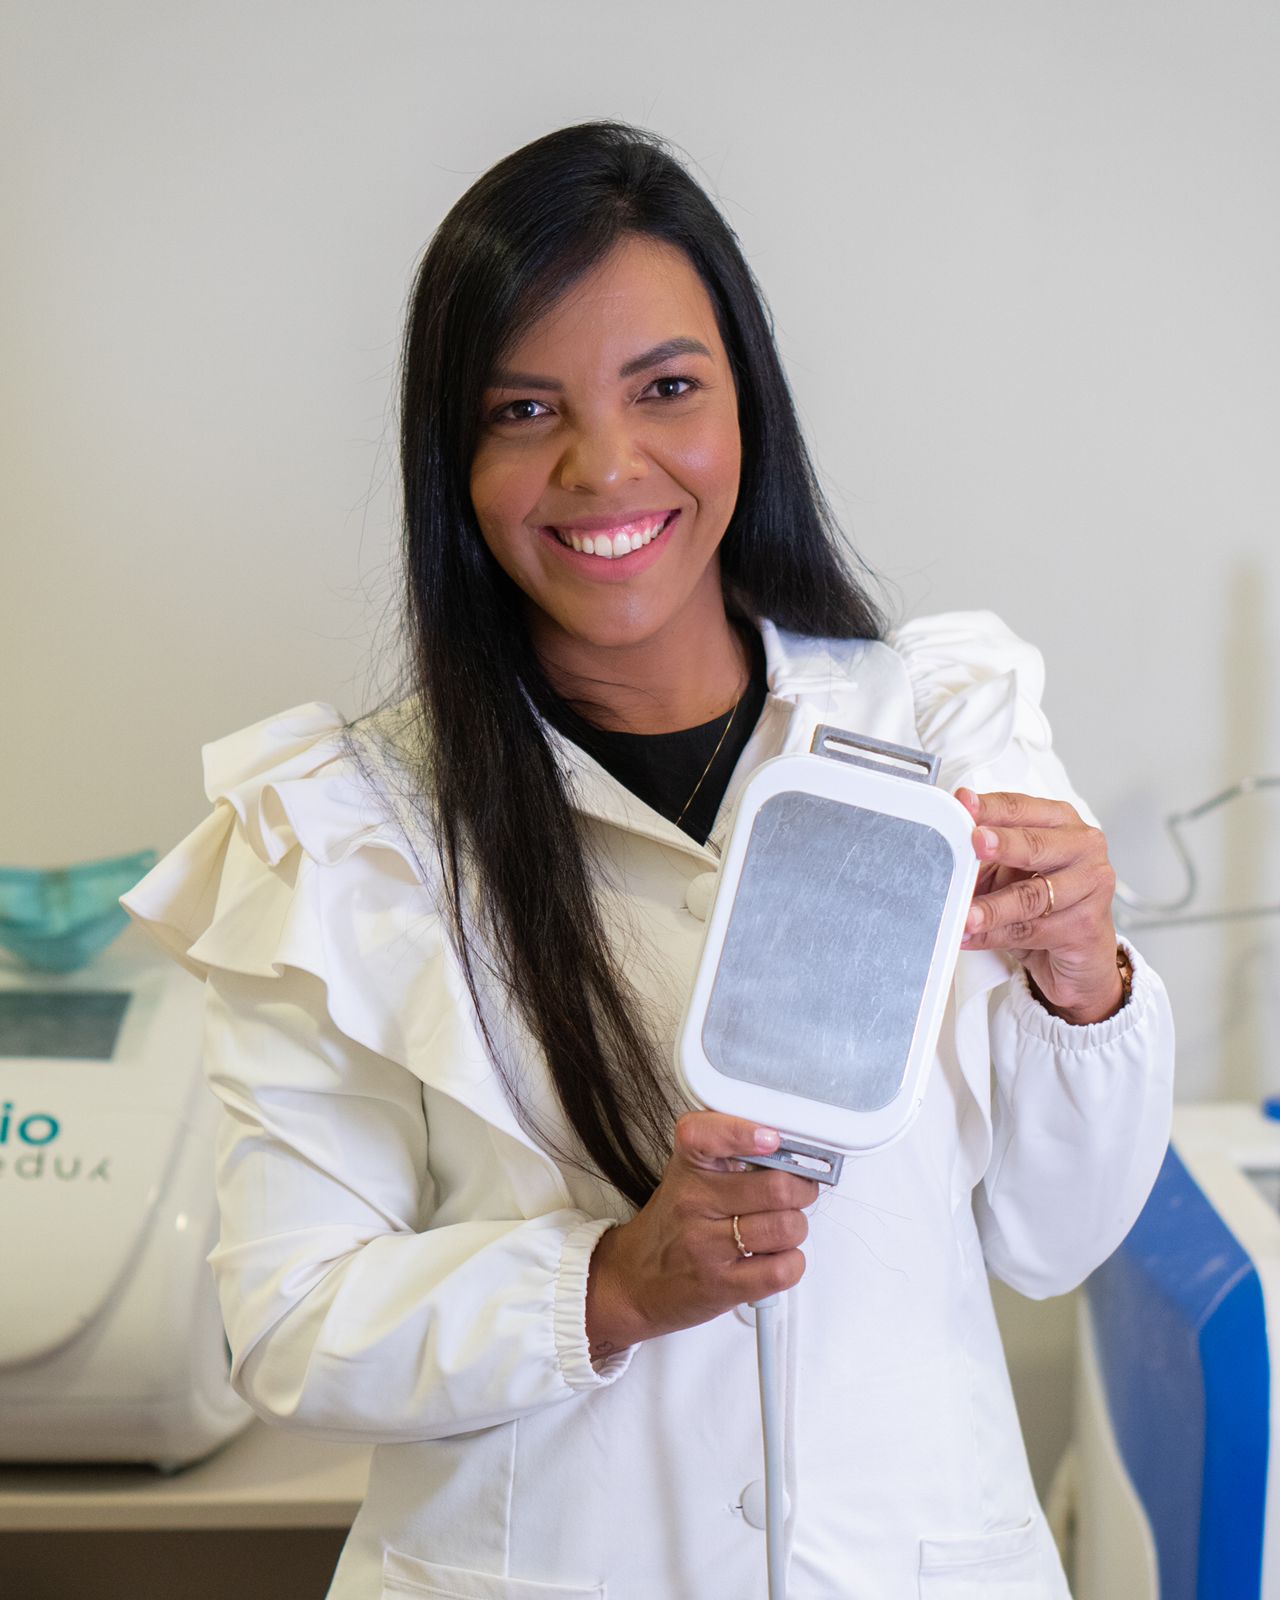 Dra. Jamile Miranda aposta na criomodelagem em sua clínica Slim